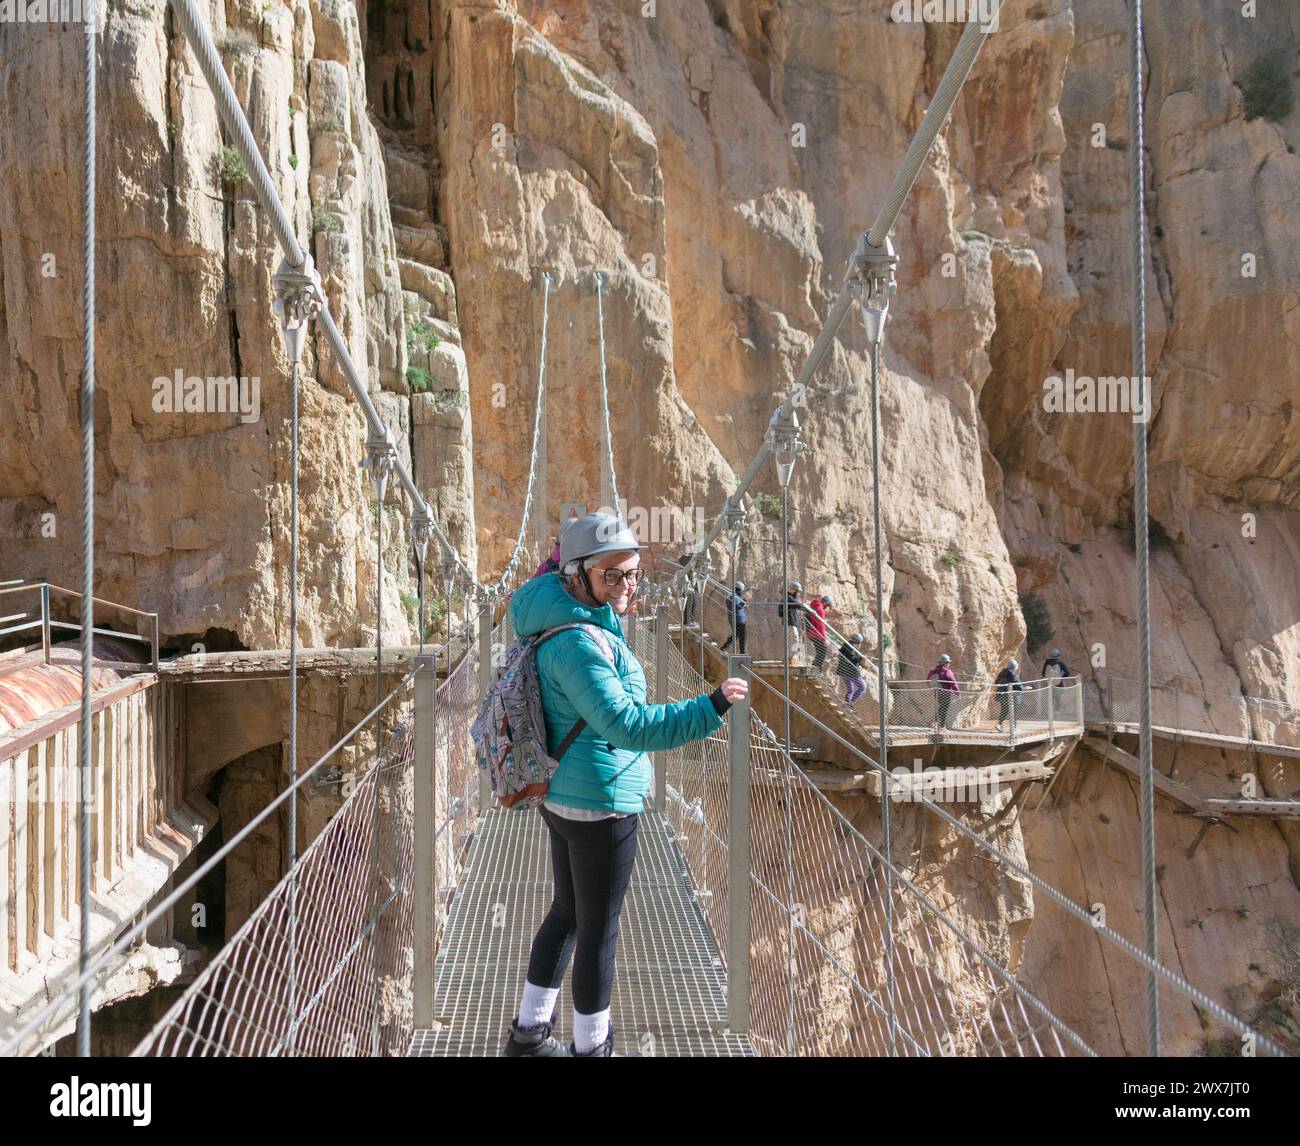 escursionista donna adulta che guarda indietro poco prima di attraversare un'altra piattaforma sospesa. Foto Stock